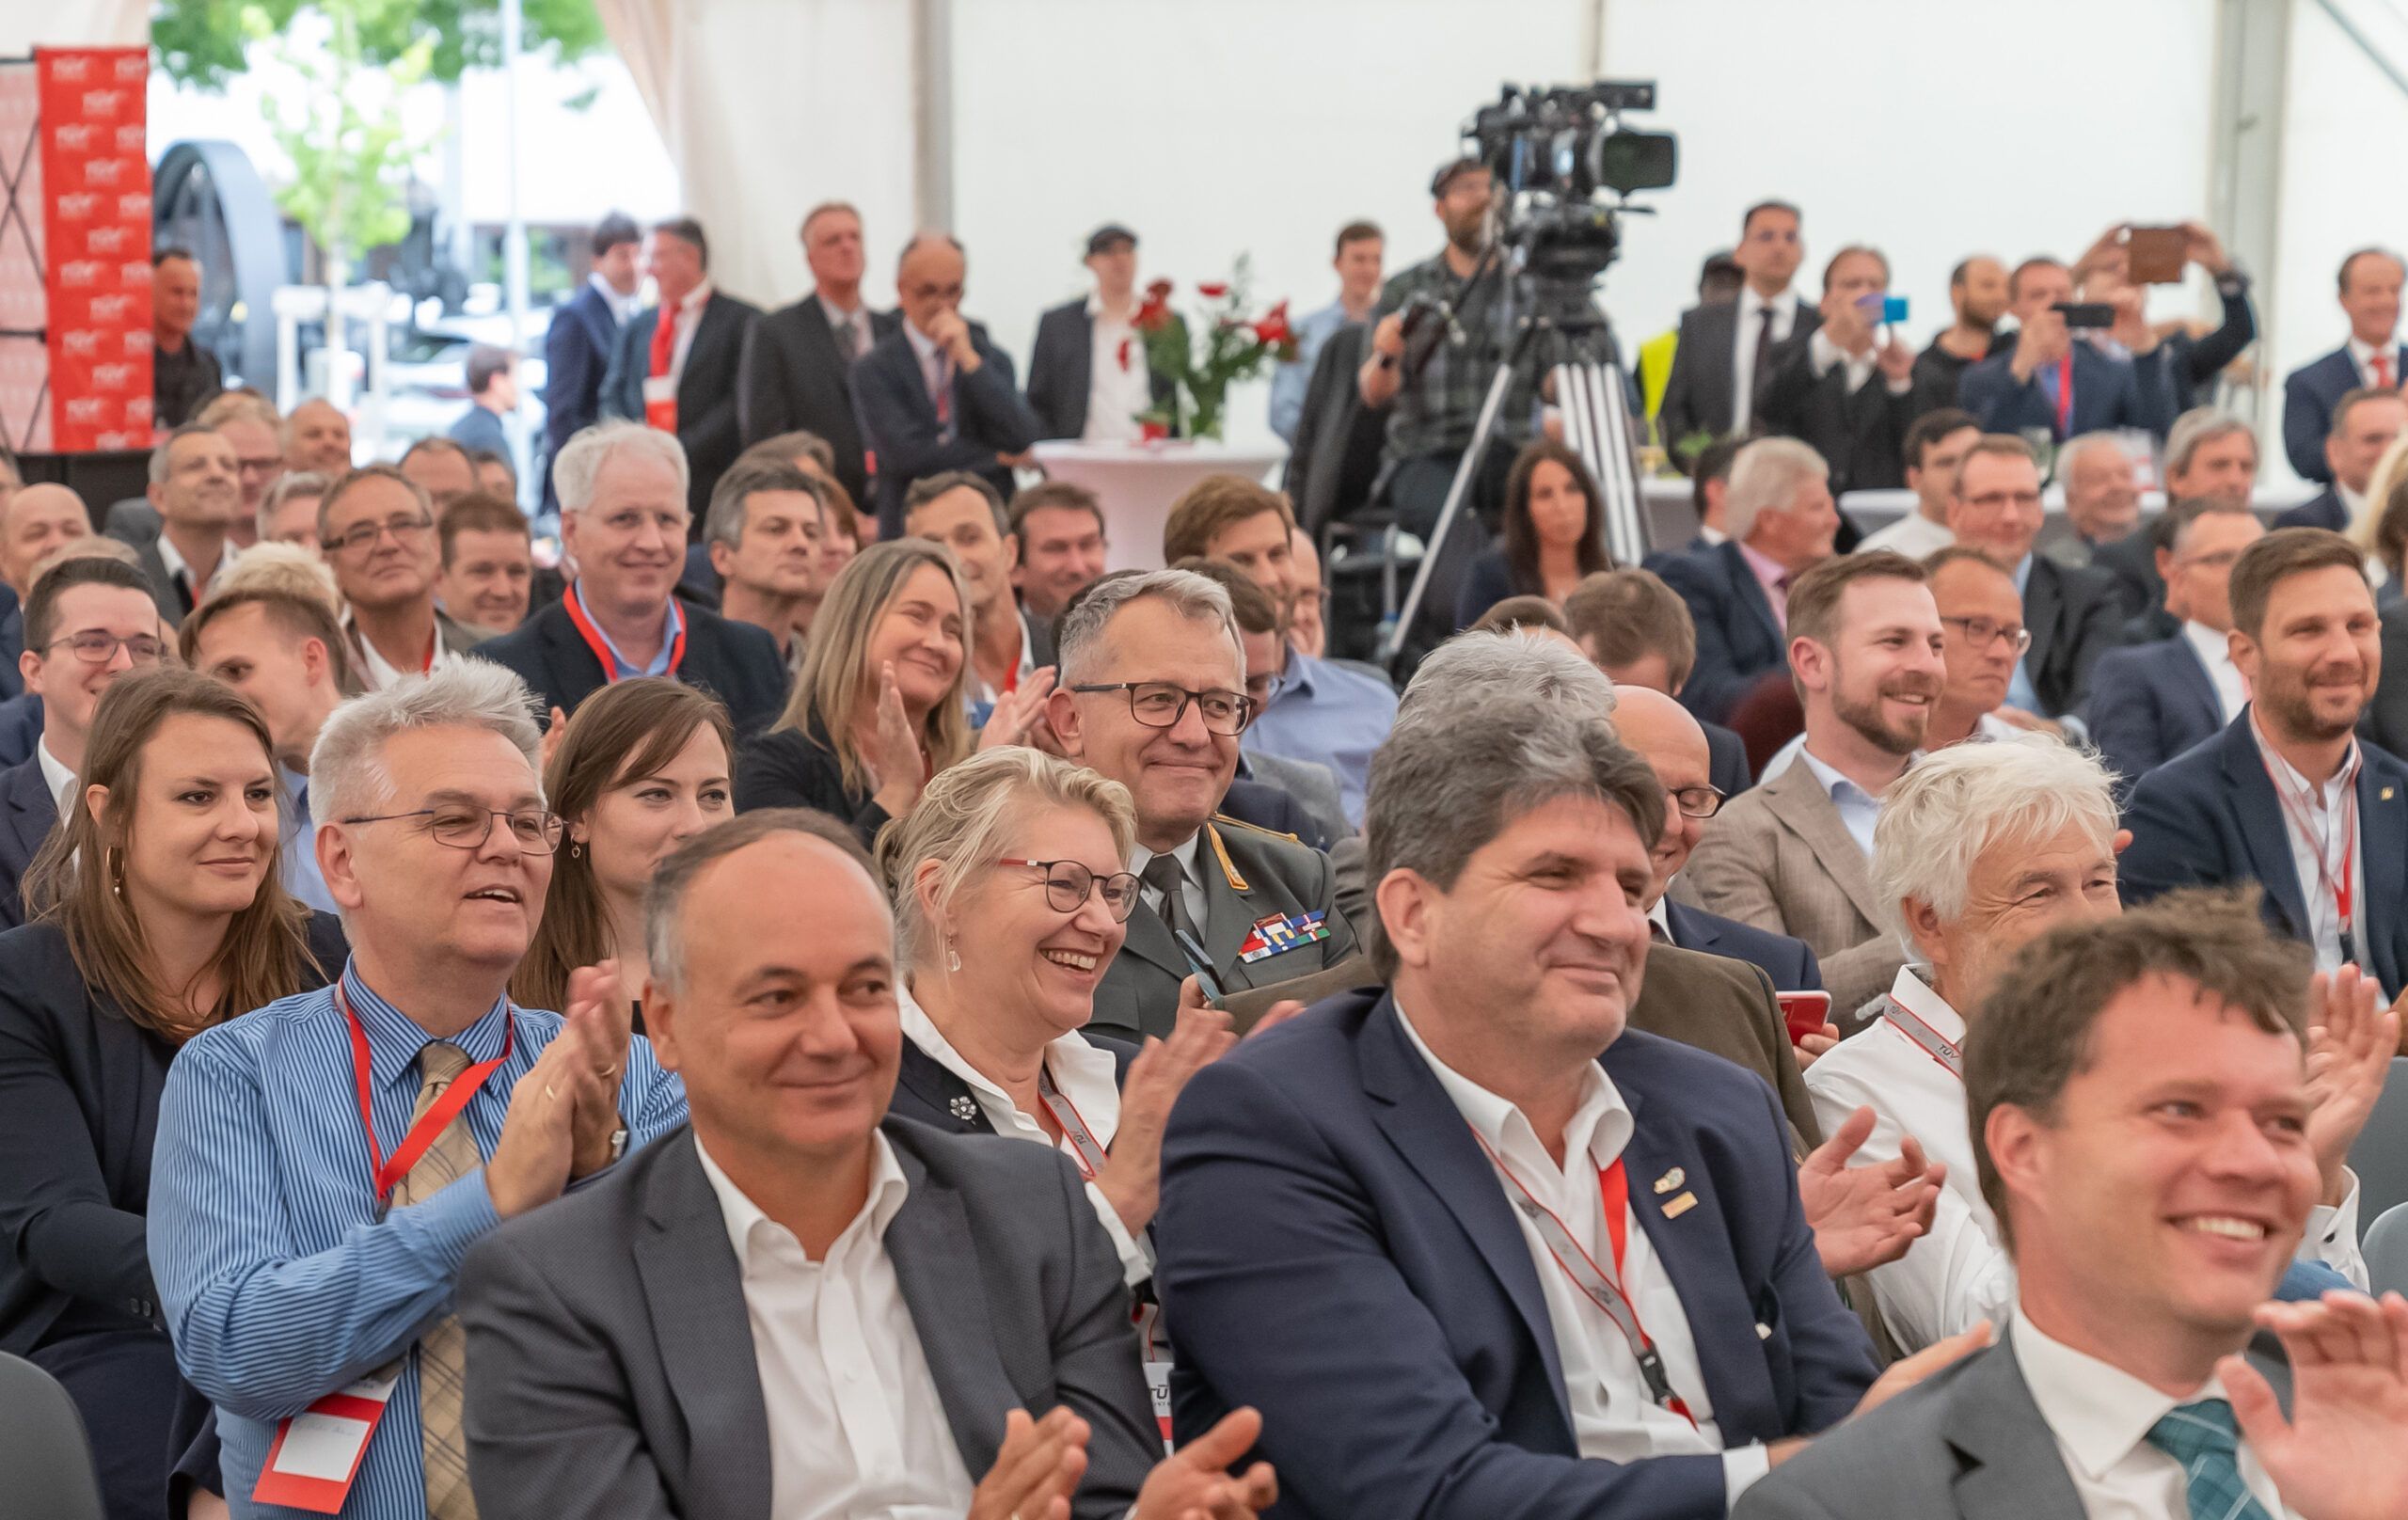 300 Gäste aus Wirtschaft, Wissenschaft, Forschung, Politik und Behörden folgten am Freitagabend der Einladung des TÜV AUSTRIA, um TÜV AUSTRIA 150 zu feiern und gemeinsam die Zukunft zu leben im TÜV AUSTRIA Technology & Innovation Center in Wien. (C) TÜV AUSTRIA, Rainer Hackstock